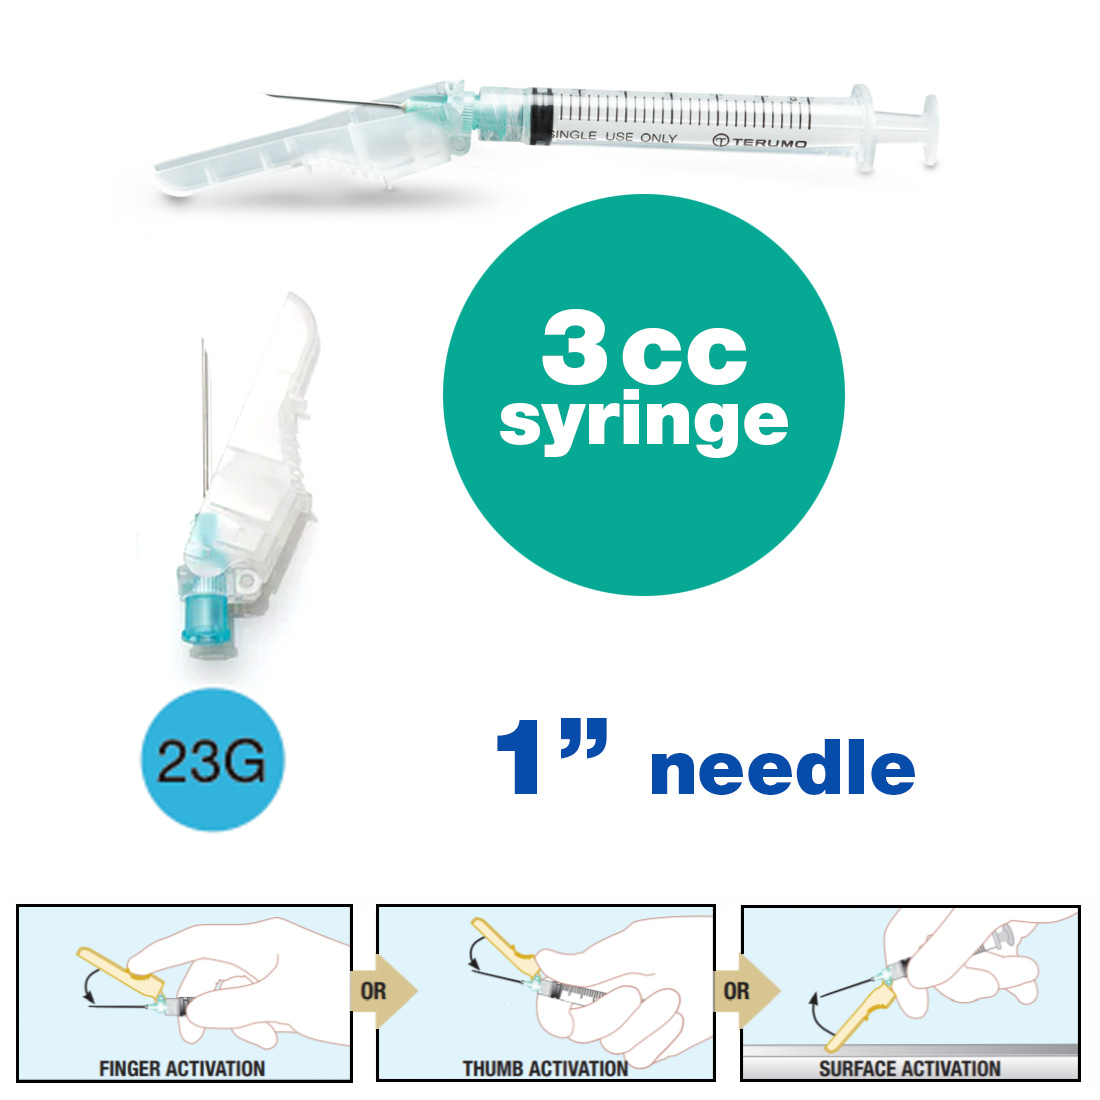 SurGuard® 3 Safety Hypodermic Needle, 3CC Syringe with 23G x 1" Needle - 100/Box